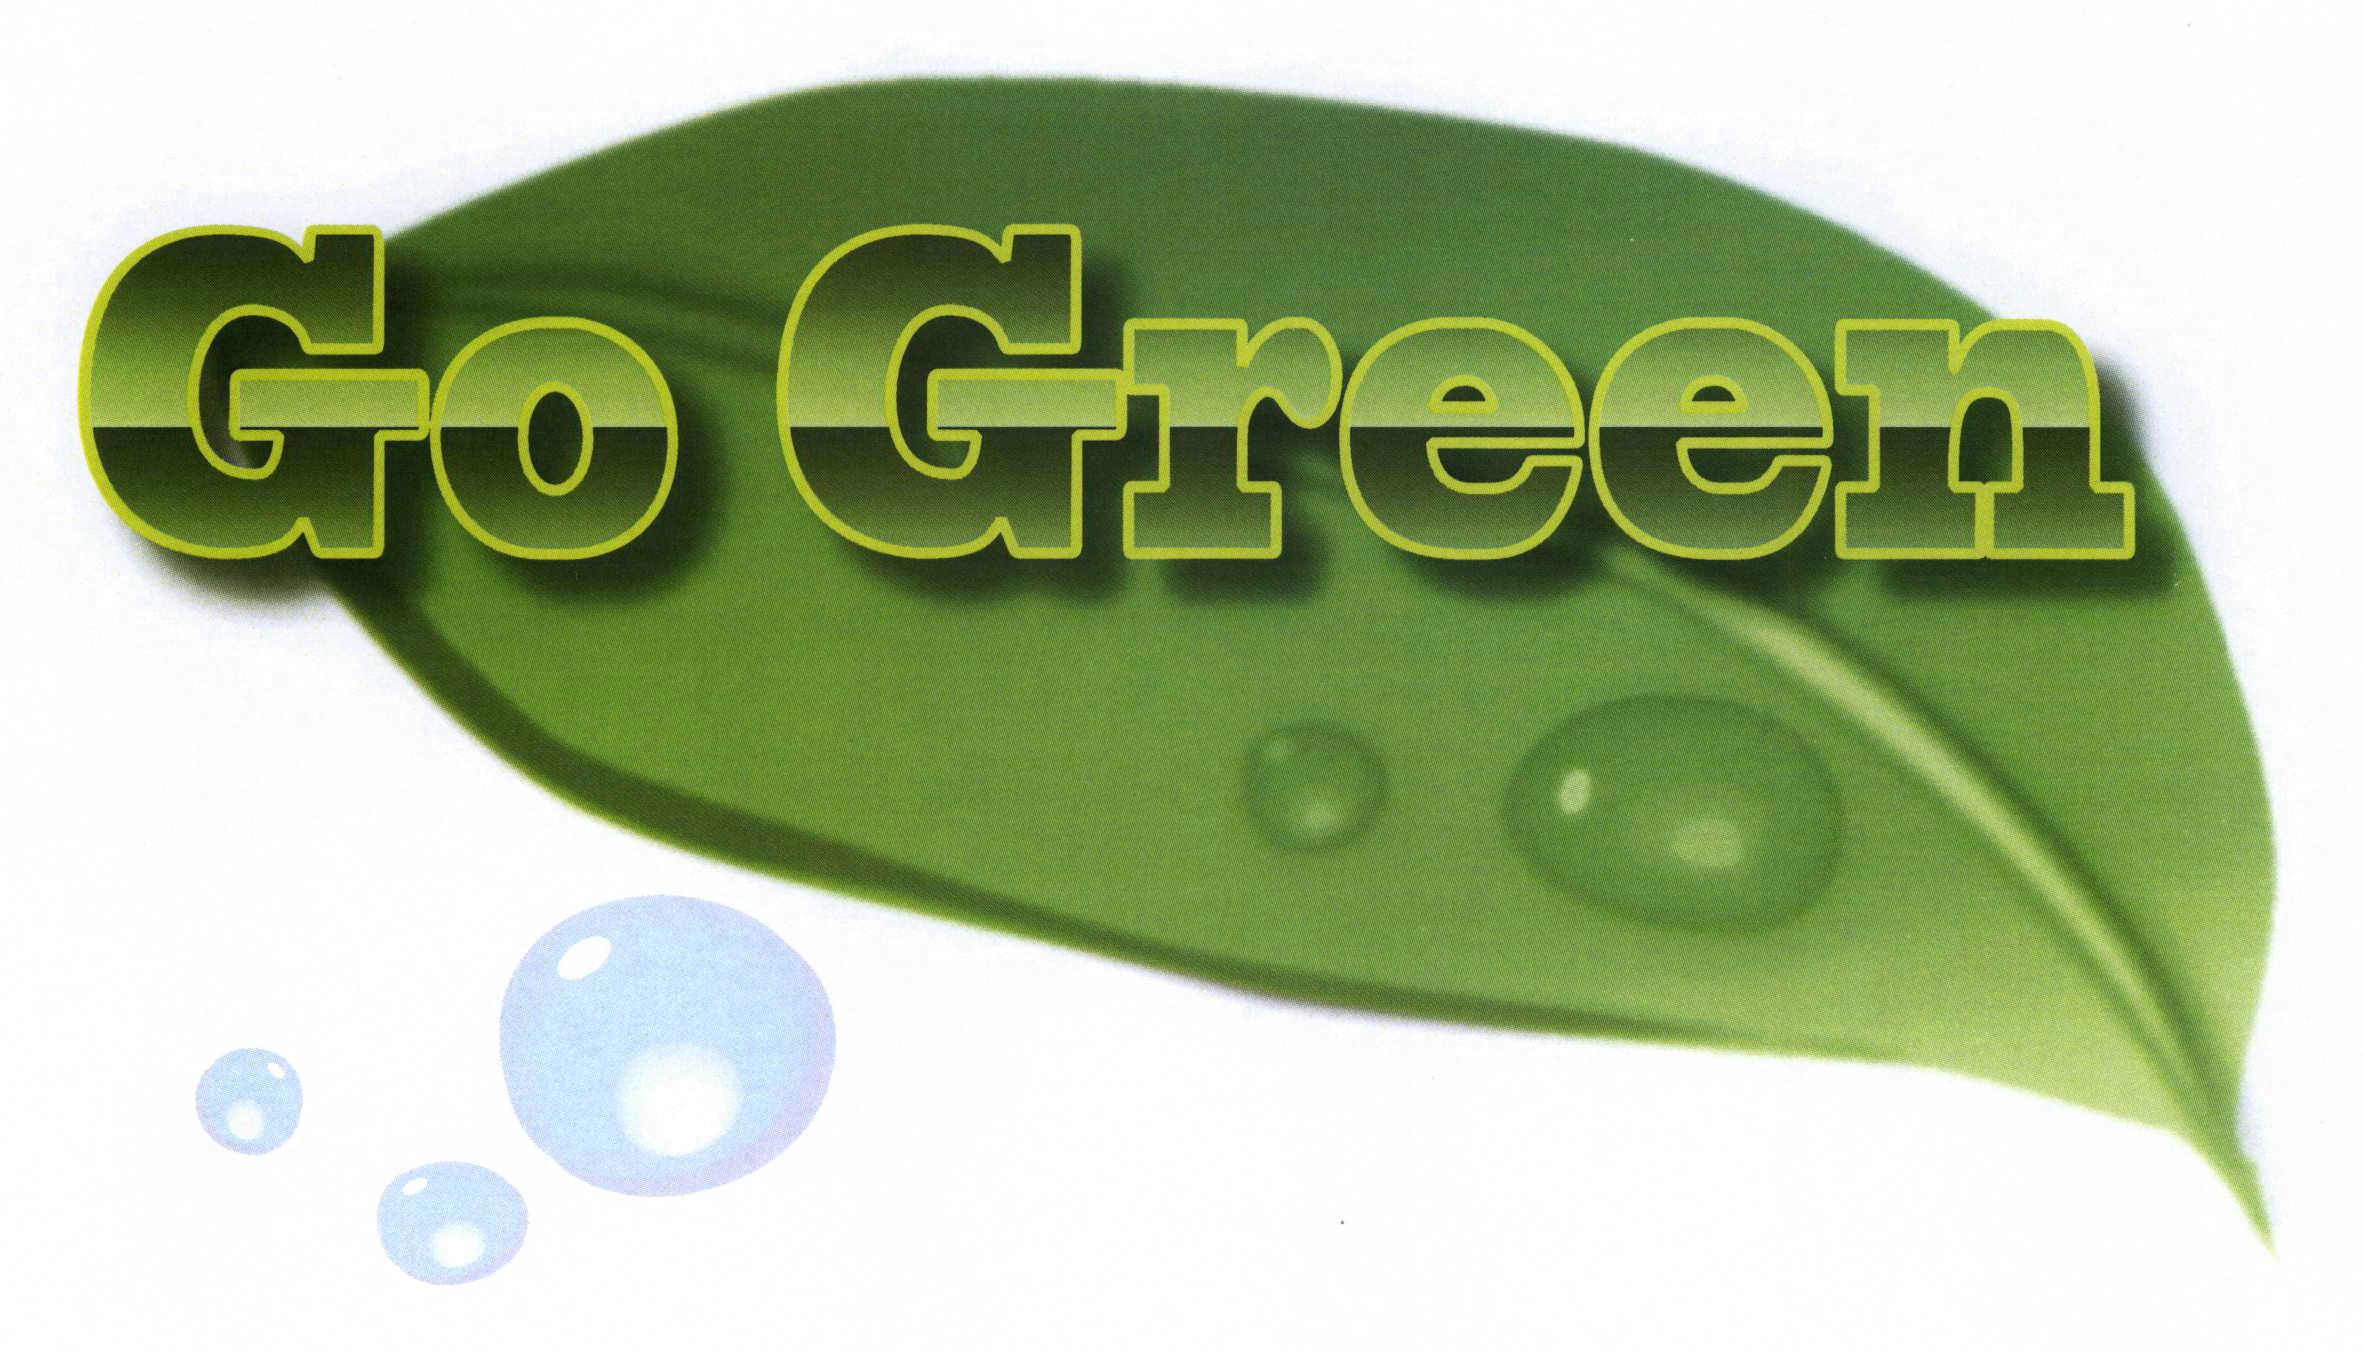 Trademark Logo GO GREEN